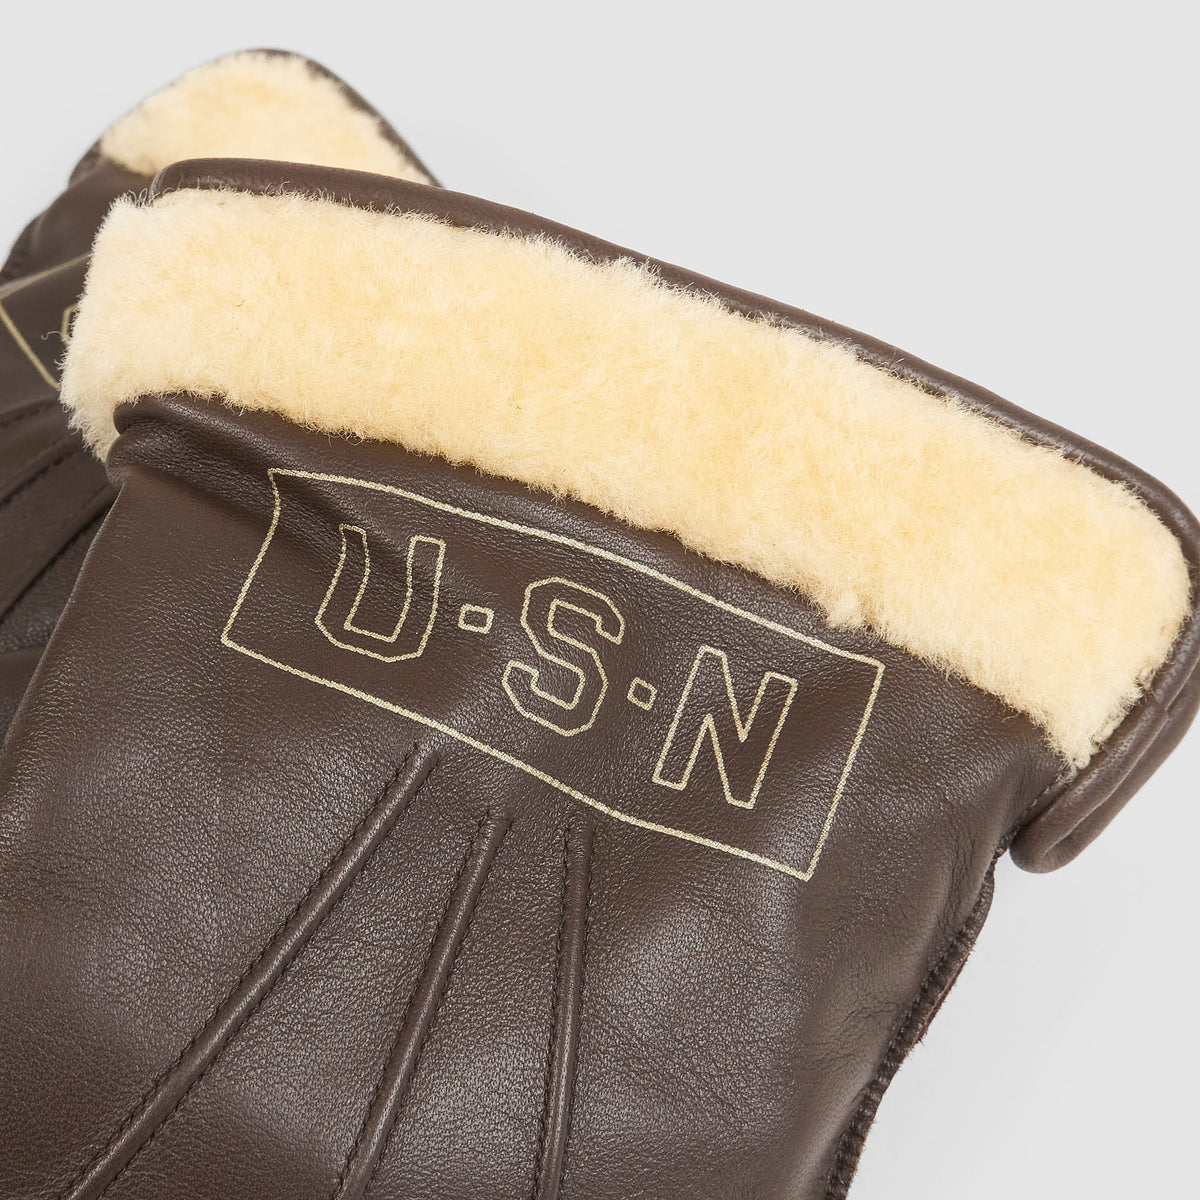 Eastman USN Gloves